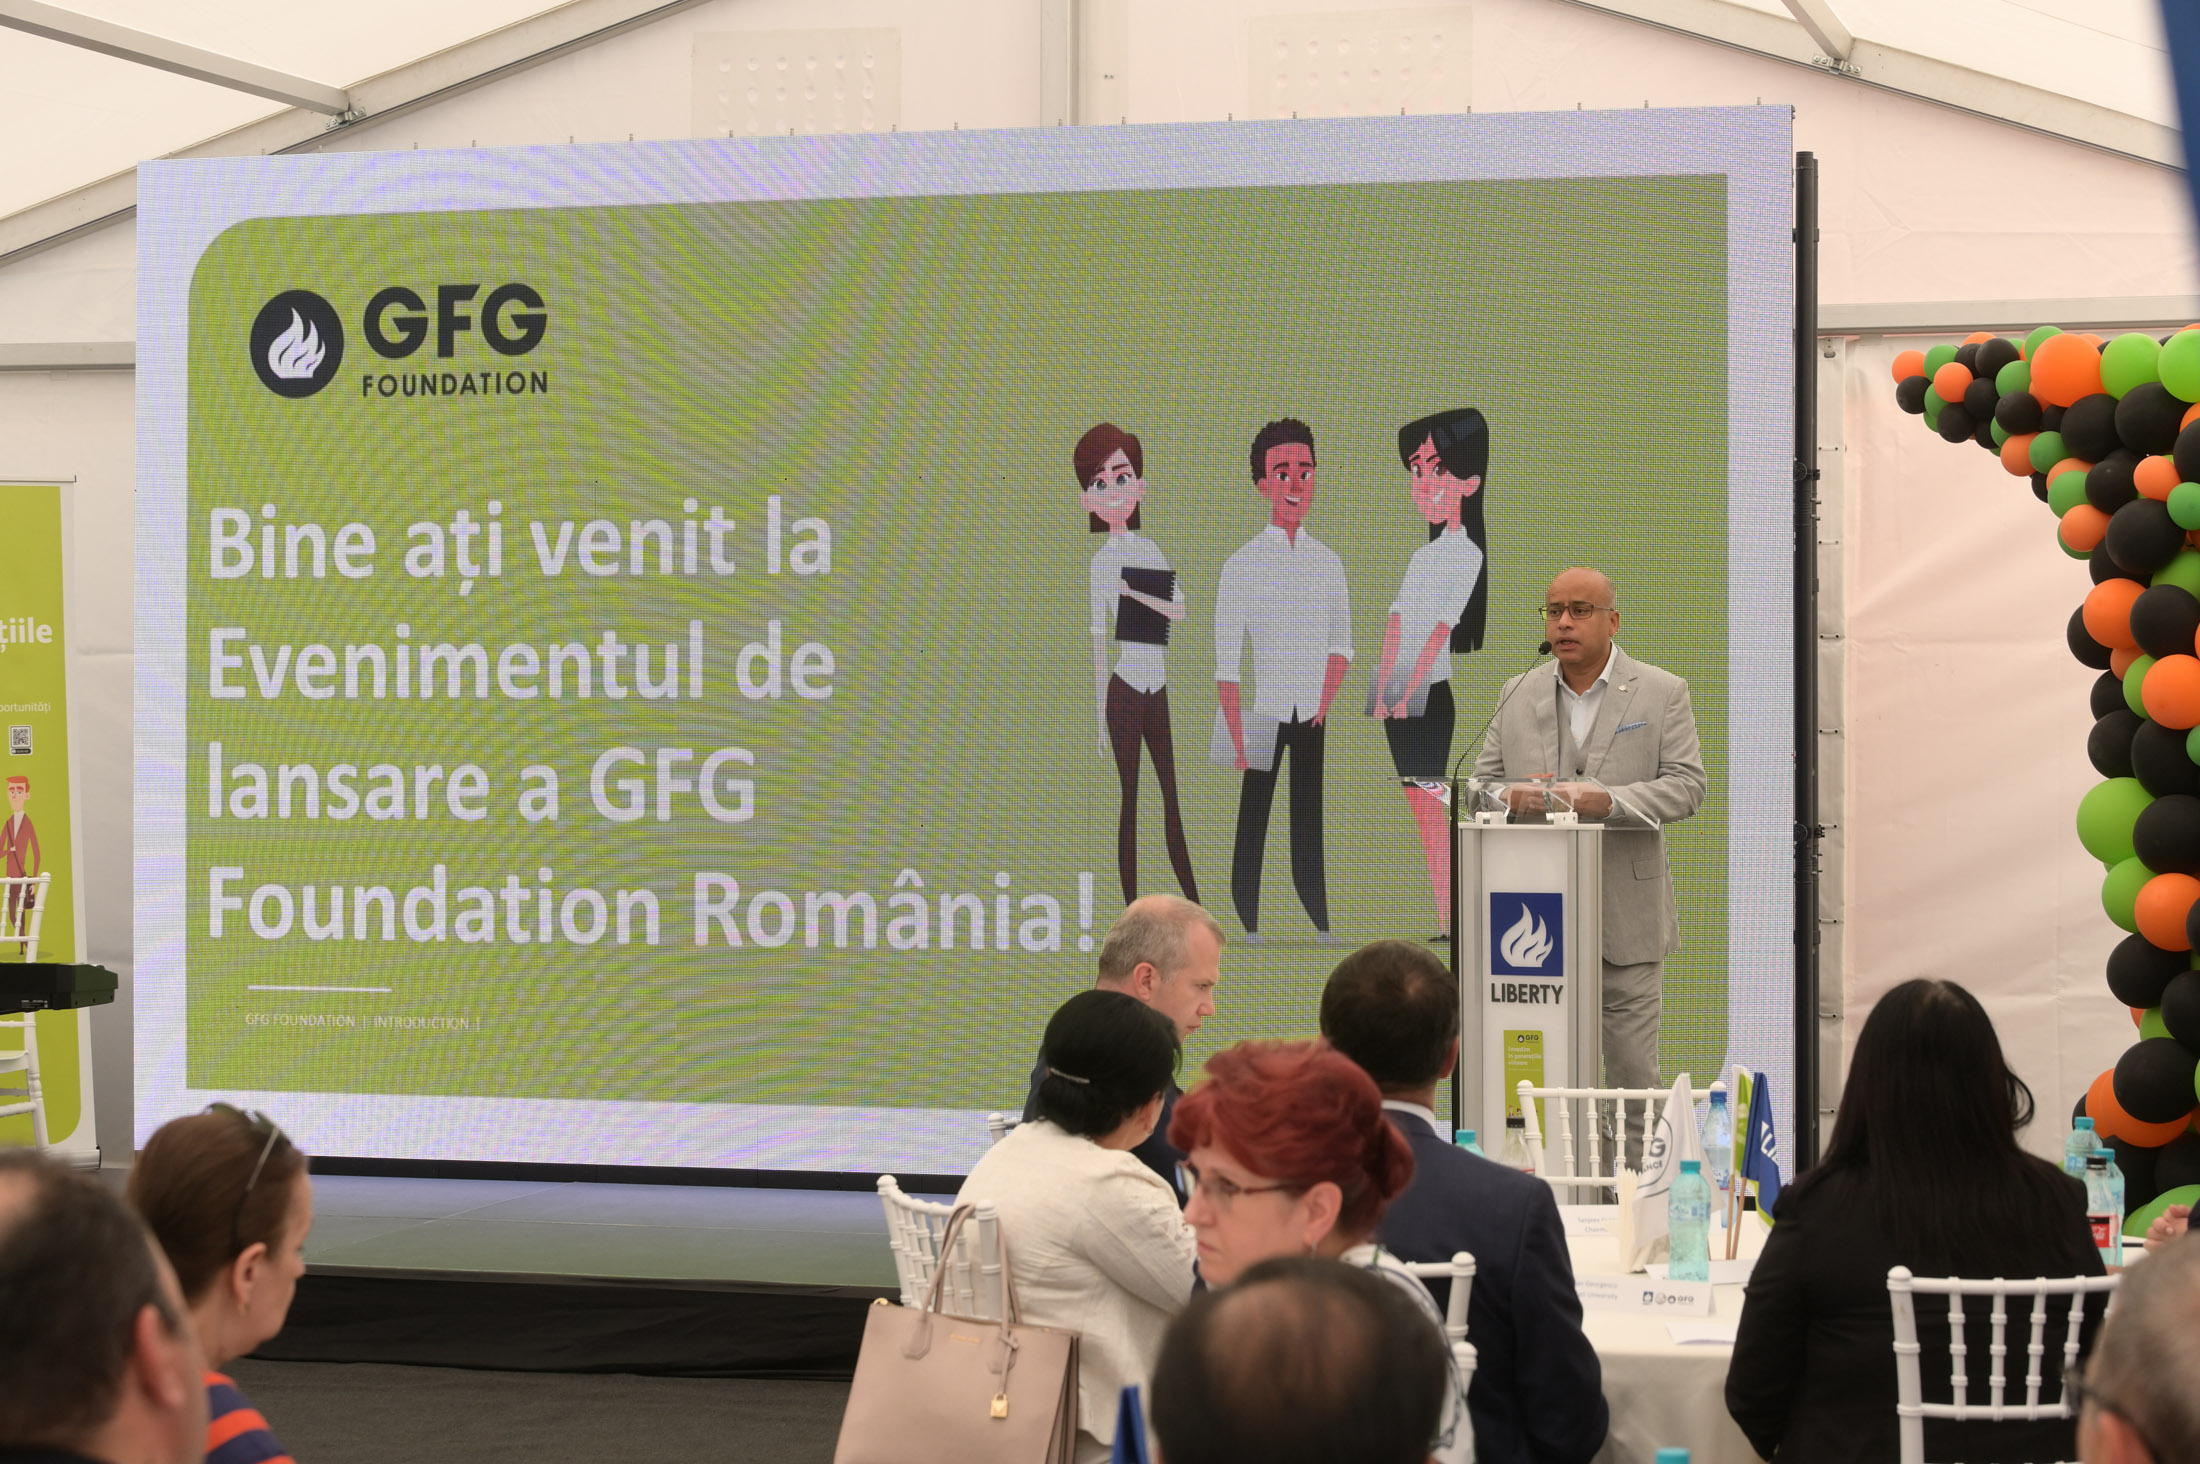 GFG Foundation erweidert a Rumänien